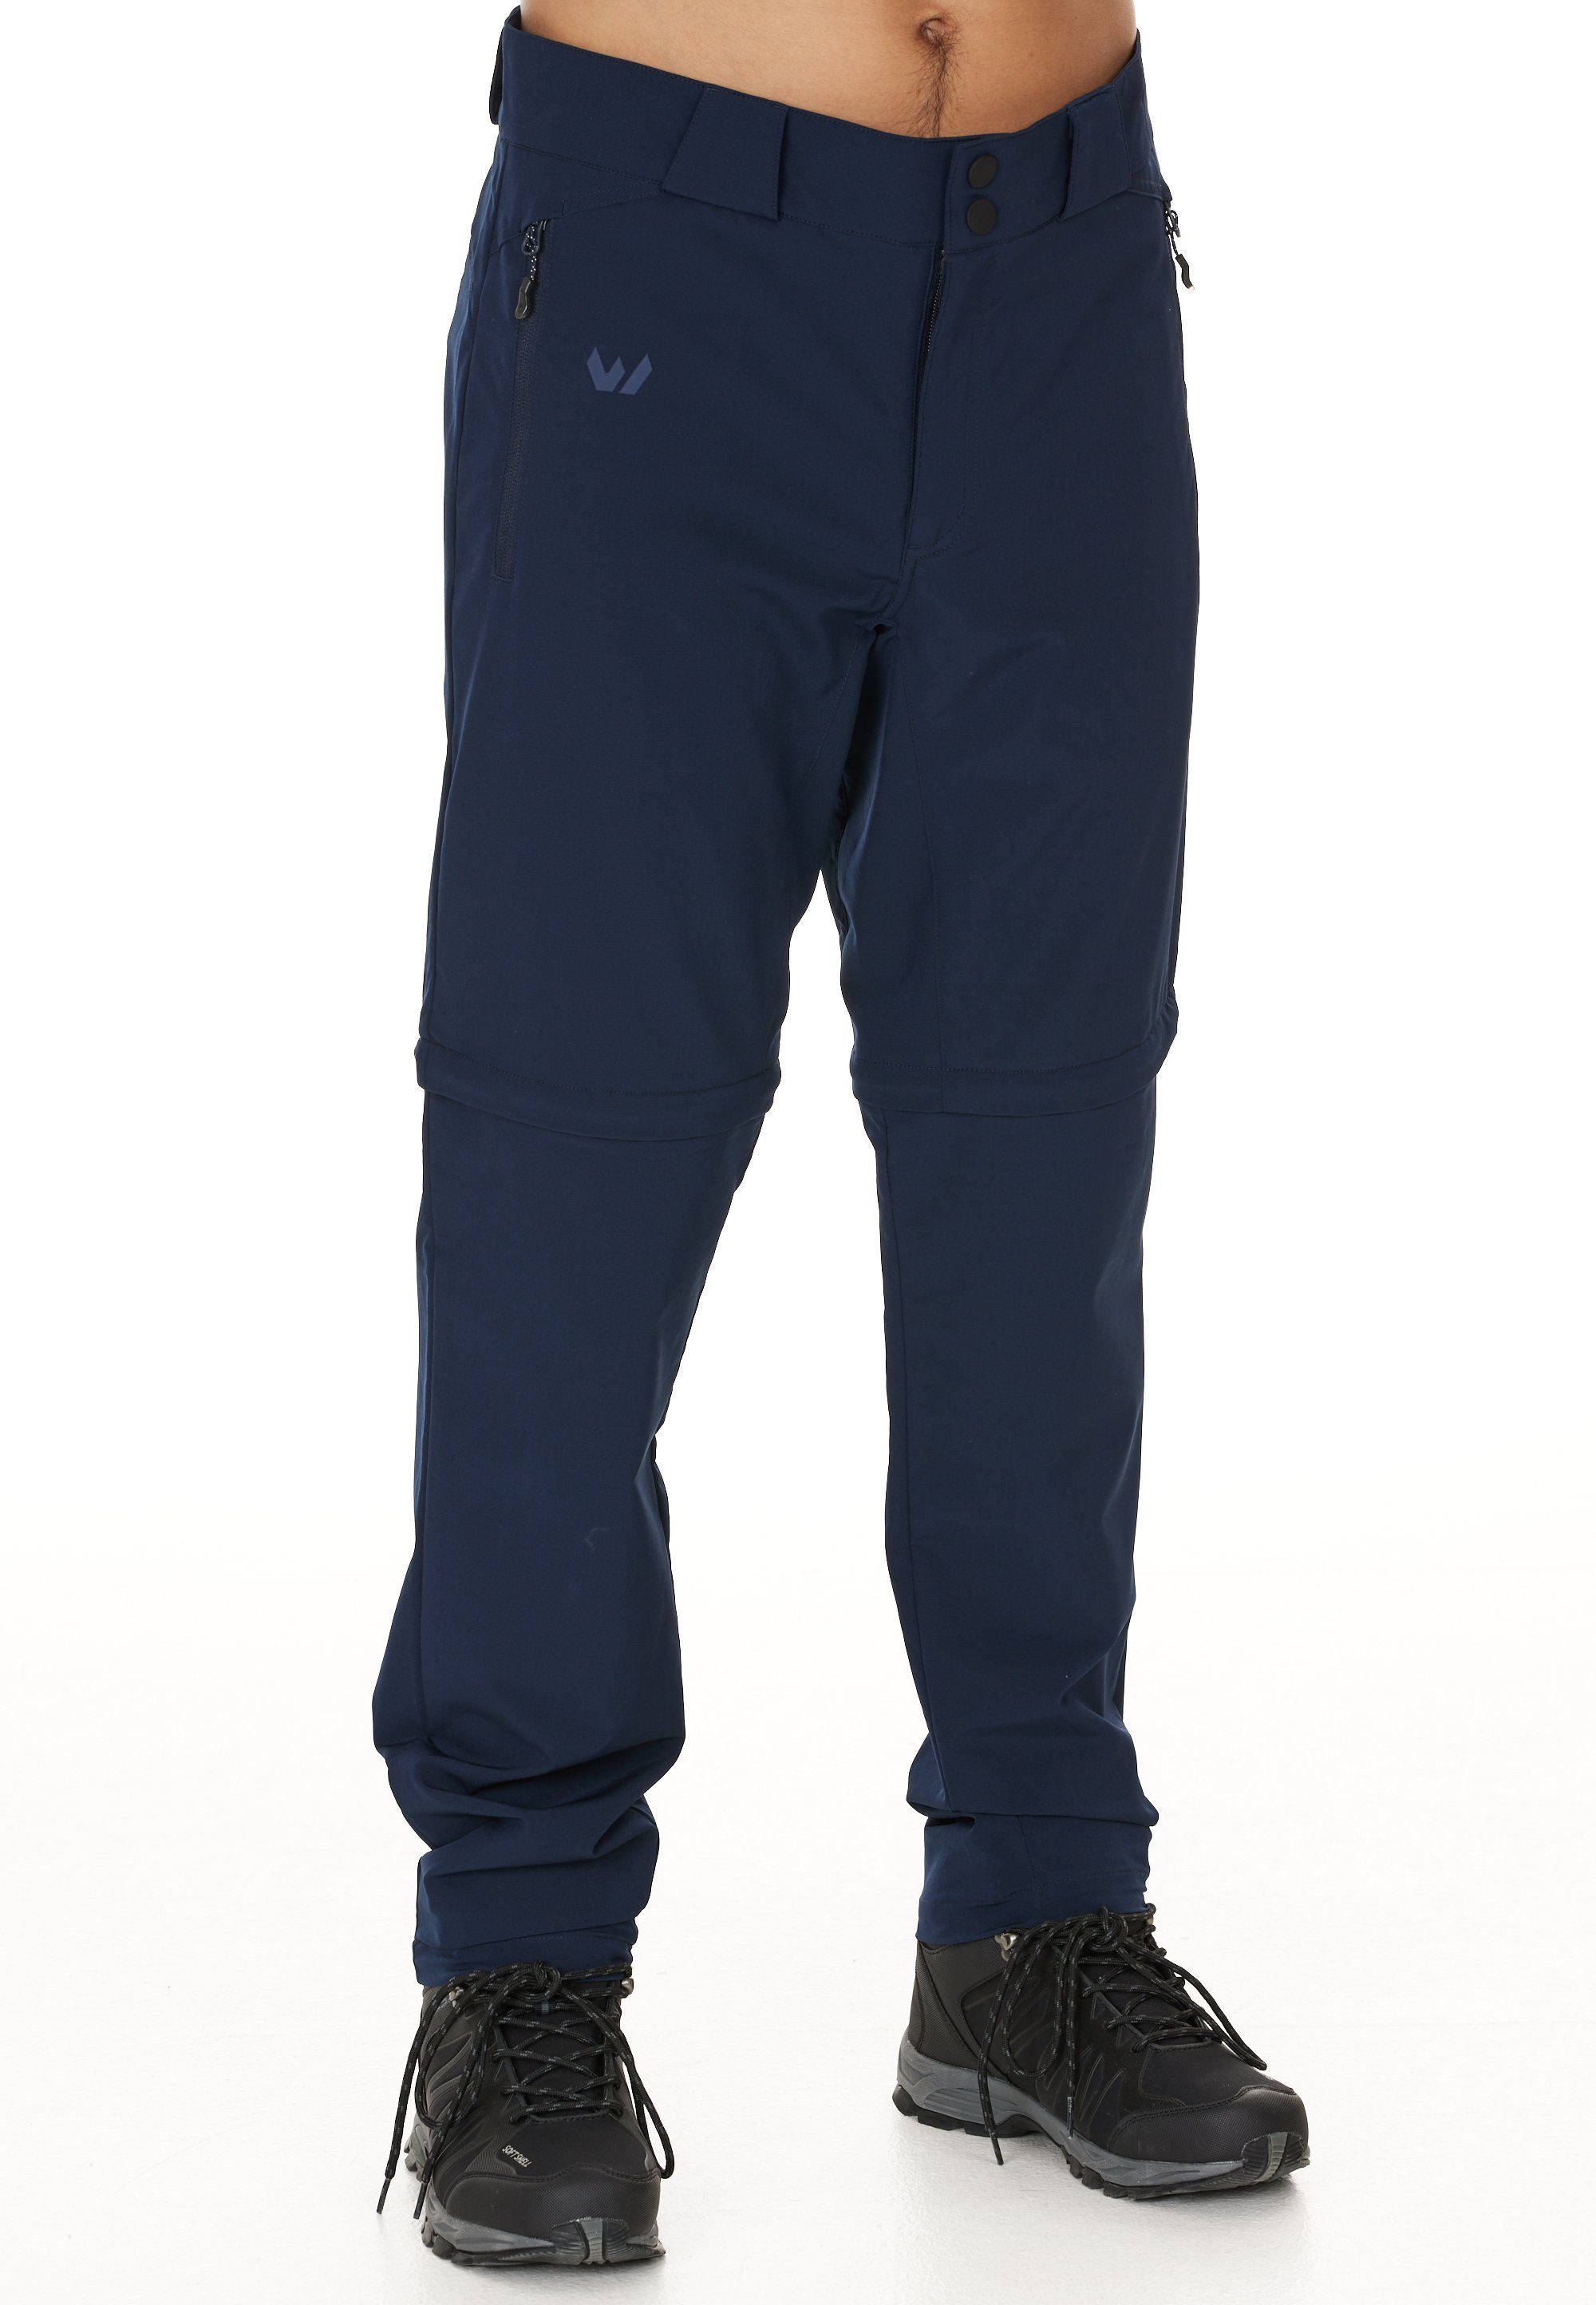 WHISTLER Outdoorhose Gerdi zur Verwendung als Hose oder Shorts dank Zip-Off-Funktion dunkelblau